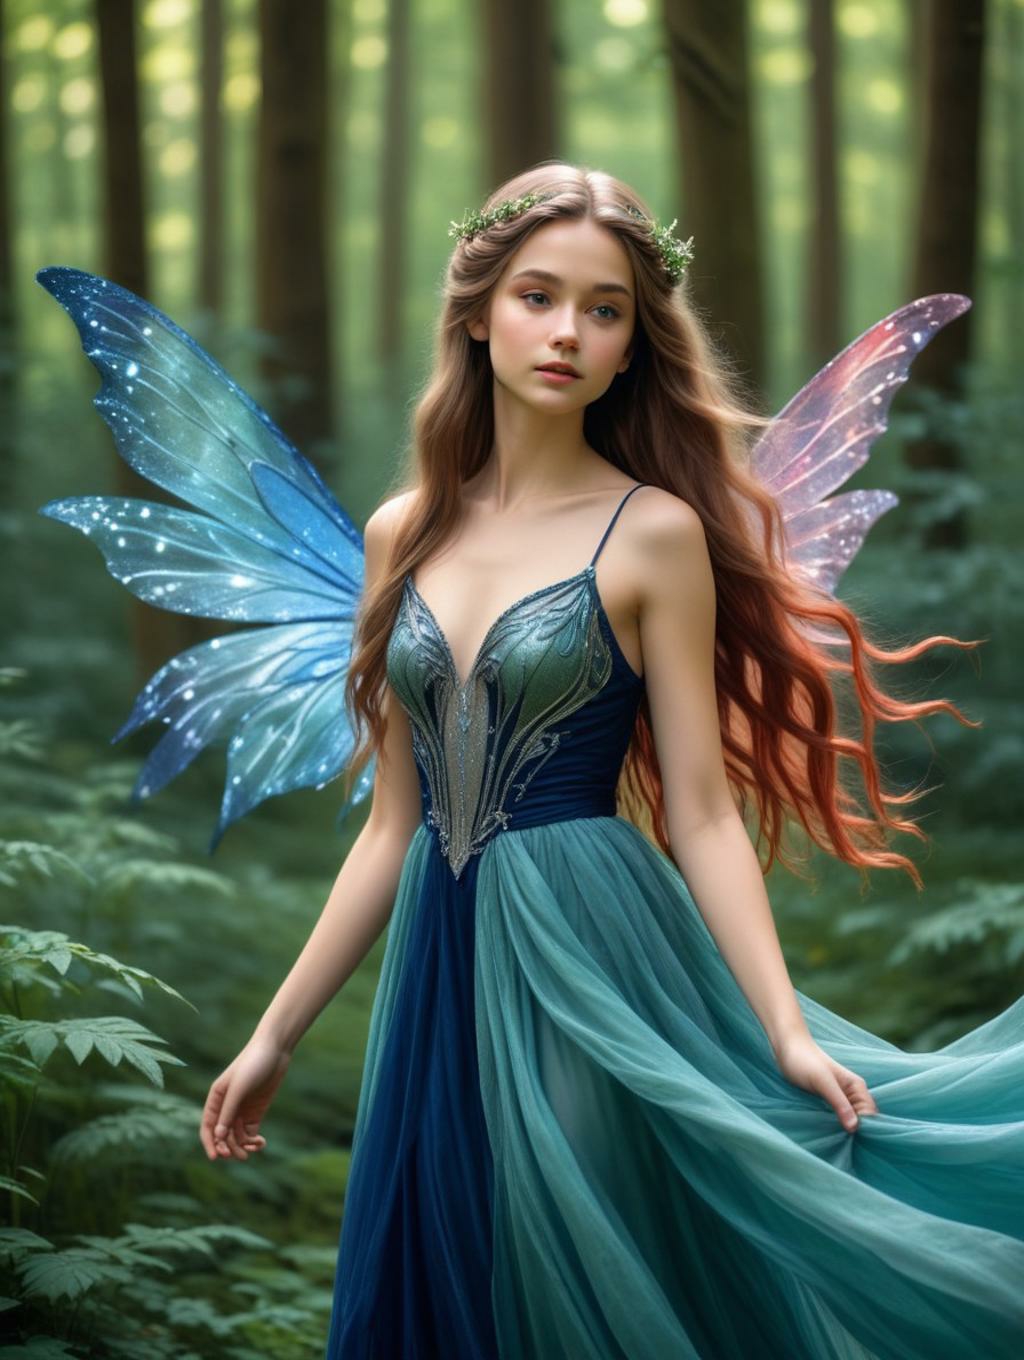 Magical Fairies: Wall Frames & Art Portraits-Theme:6